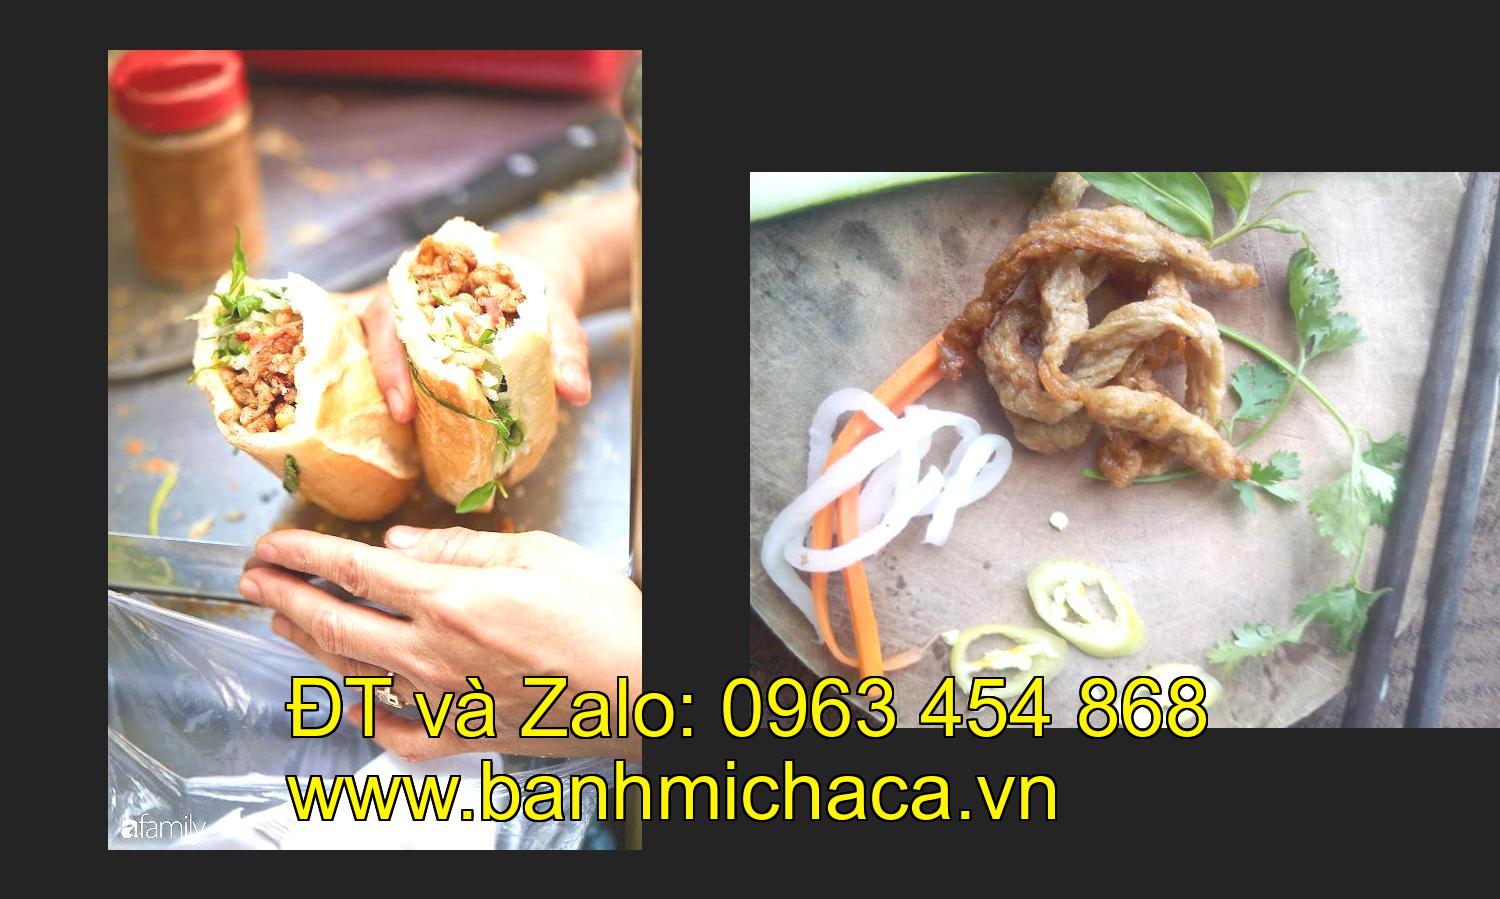 xe bánh mì chả cá giá rẻ tại tỉnh Tiền Giang